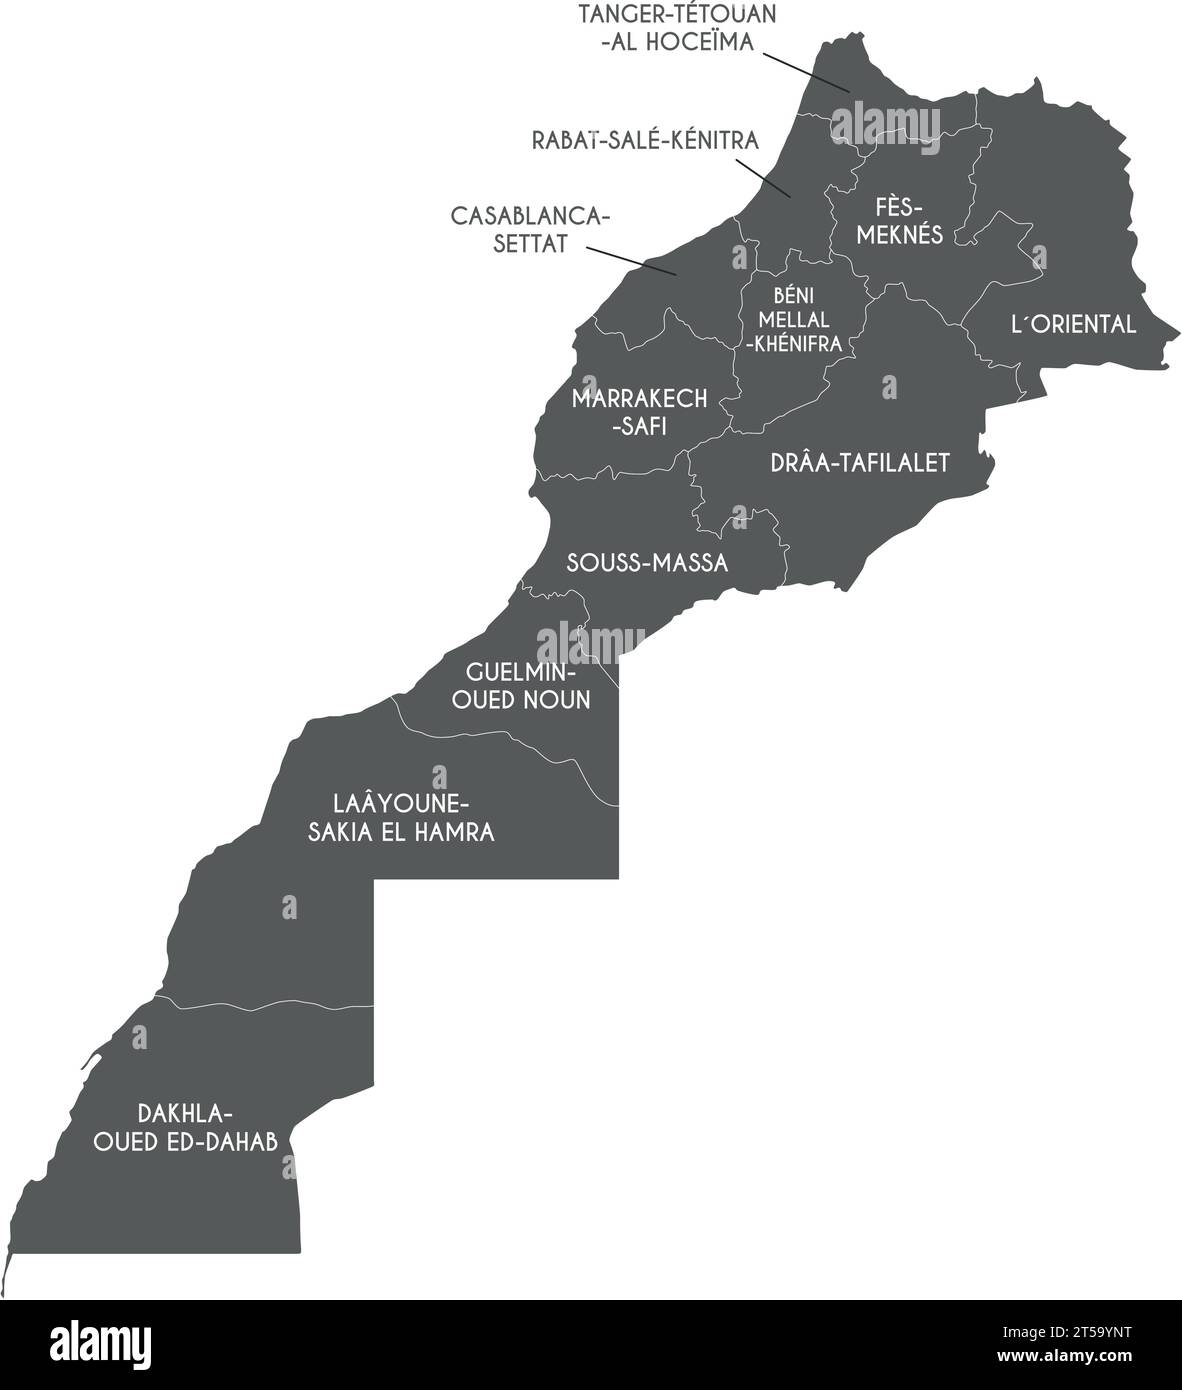 Mappa vettoriale del Marocco con regioni e divisioni amministrative. Livelli modificabili e chiaramente etichettati. Illustrazione Vettoriale